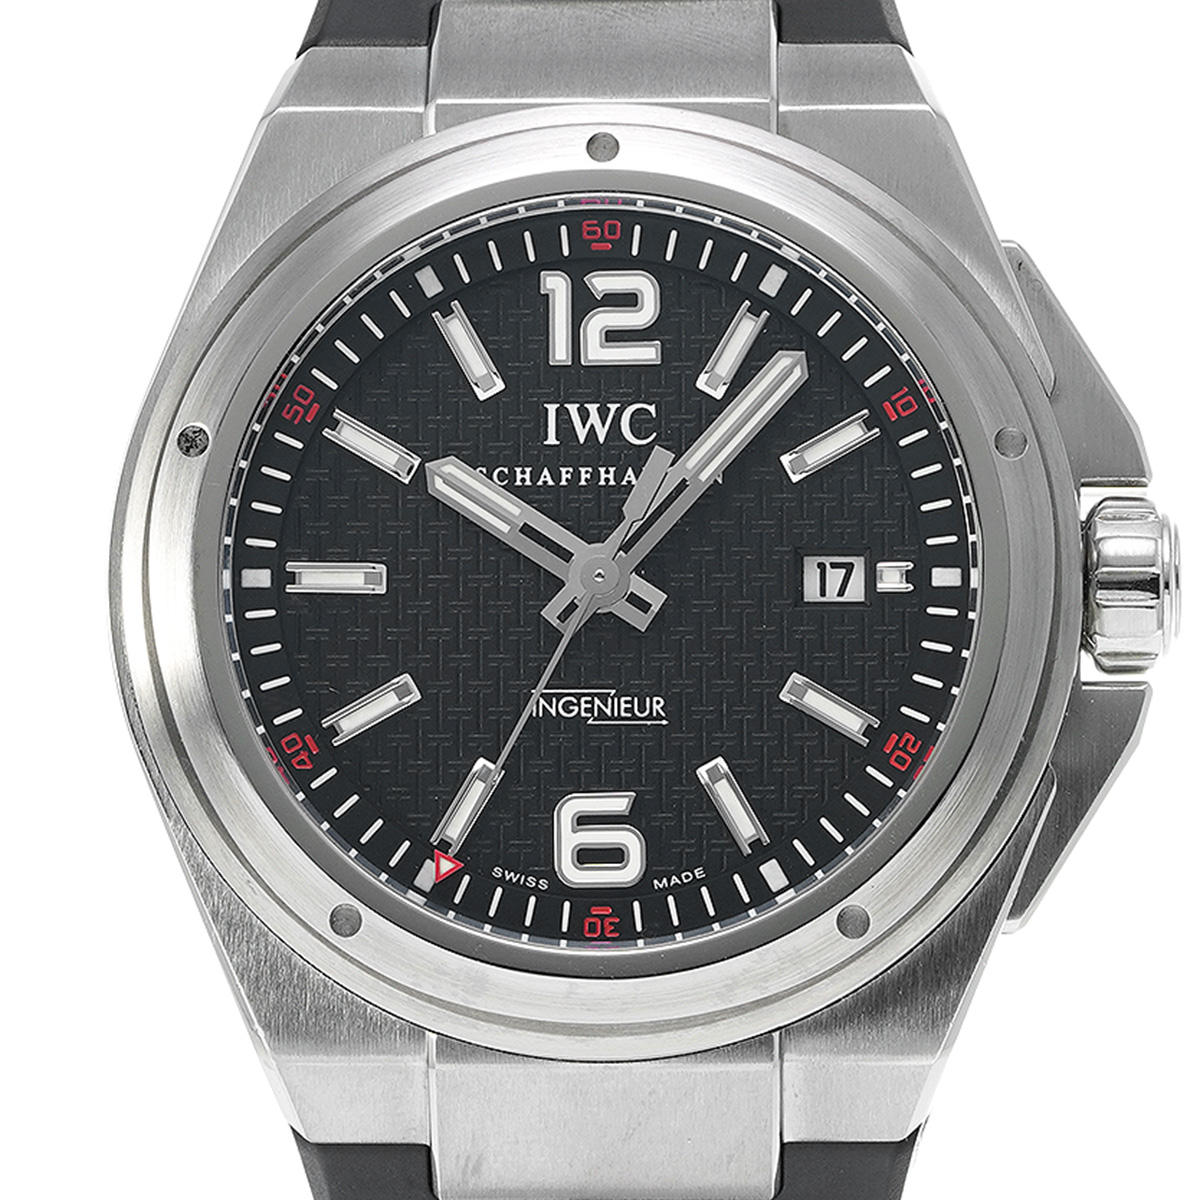 IWC インヂュニア オートマティック ミッションアース IW323601 